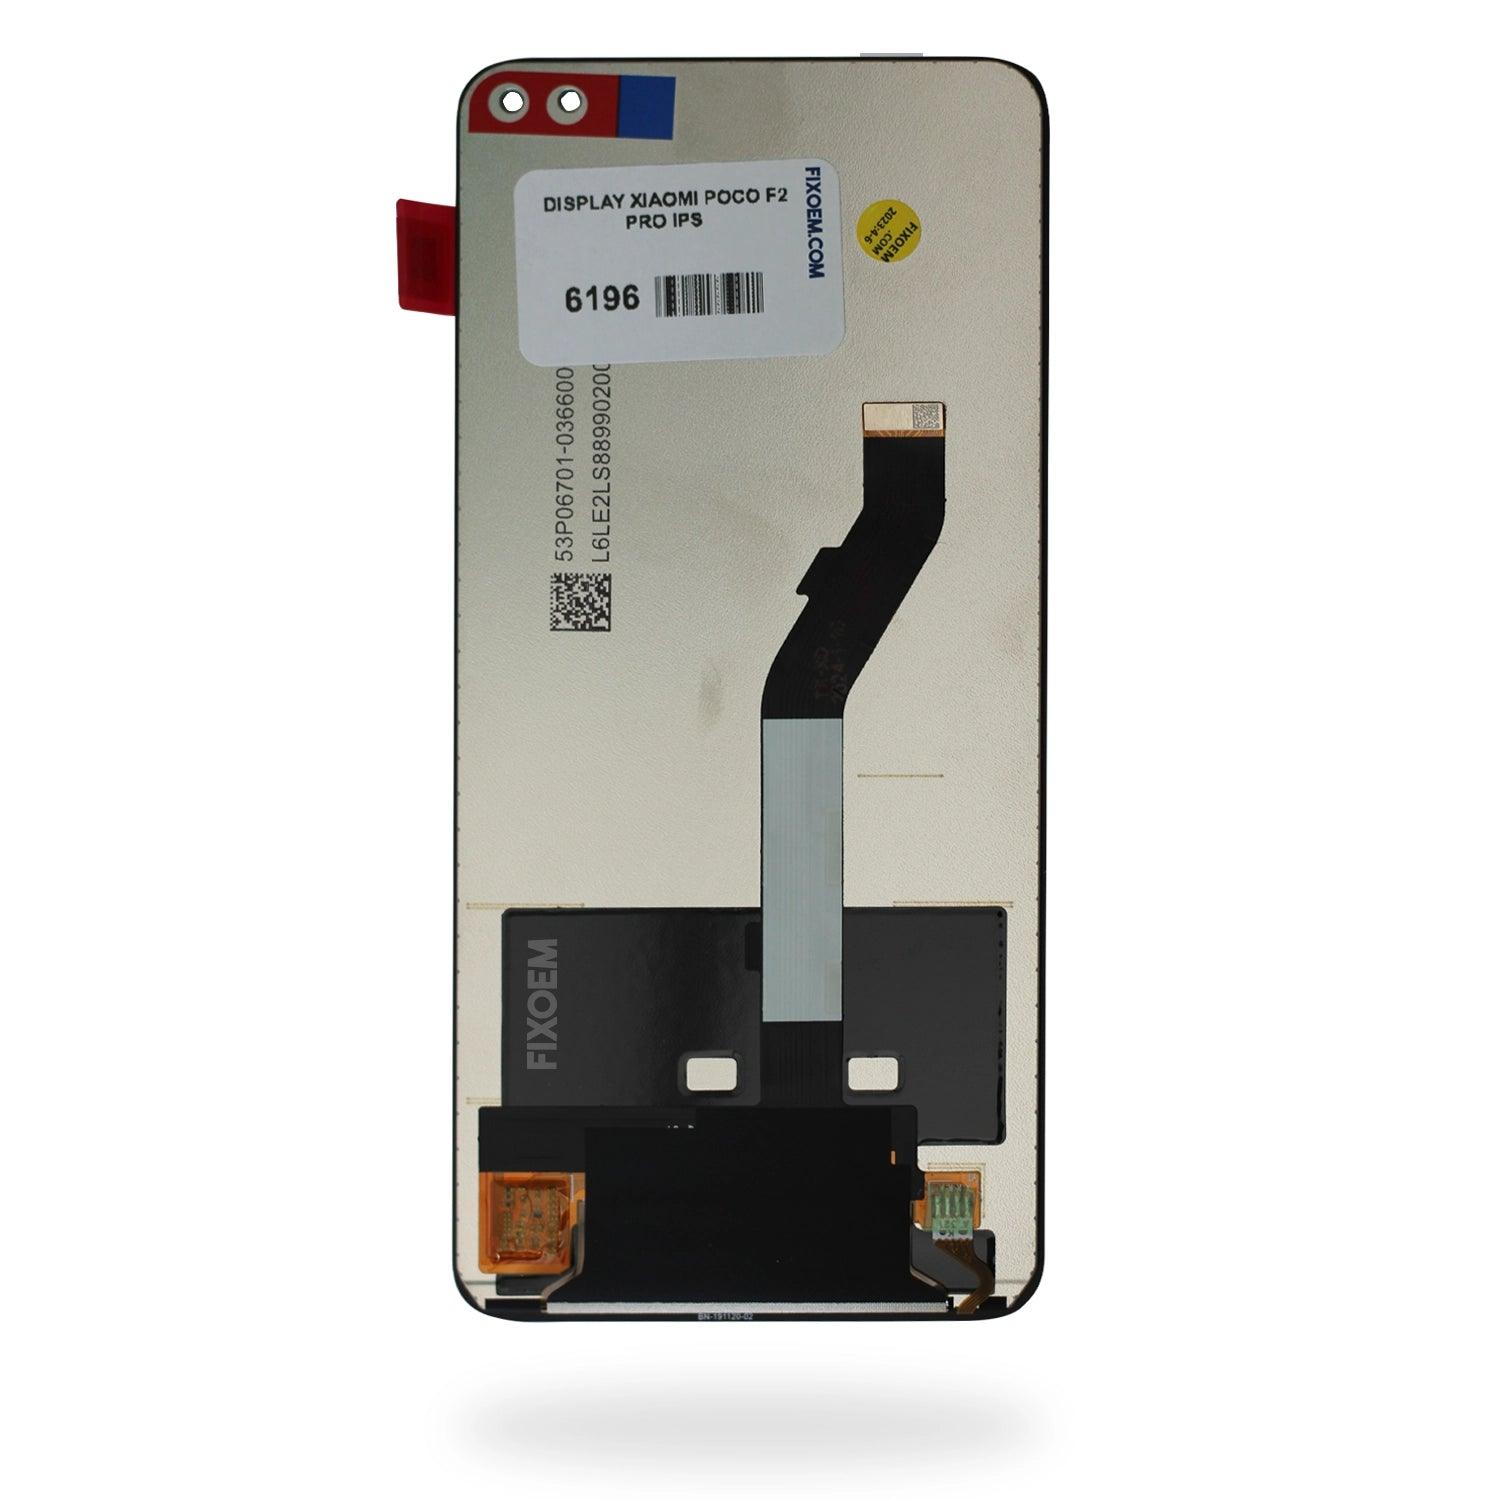 Display Xiaomi Poco F2 Pro Ips a solo $ 300.00 Refaccion y puestos celulares, refurbish y microelectronica.- FixOEM